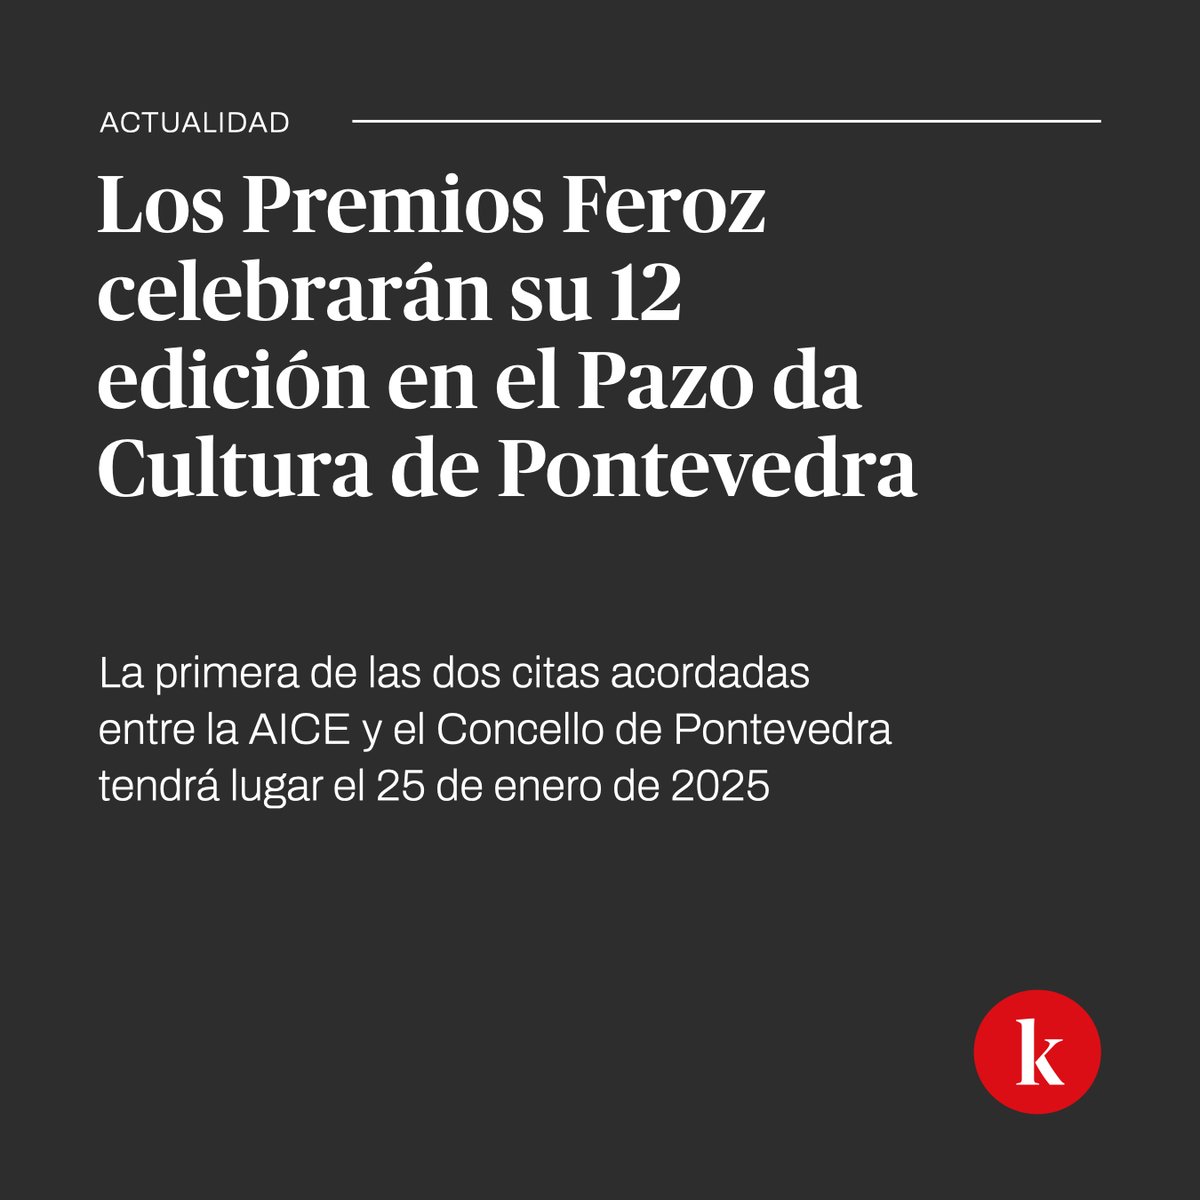 Los @PremiosFeroz se celebrarán en Pontevedra en 2025 y 2026

@maguerram acaba de anunciar el acuerdo entre la AICE y @Pontevedrate 

🔗 kinotico.es/actualidad/202…